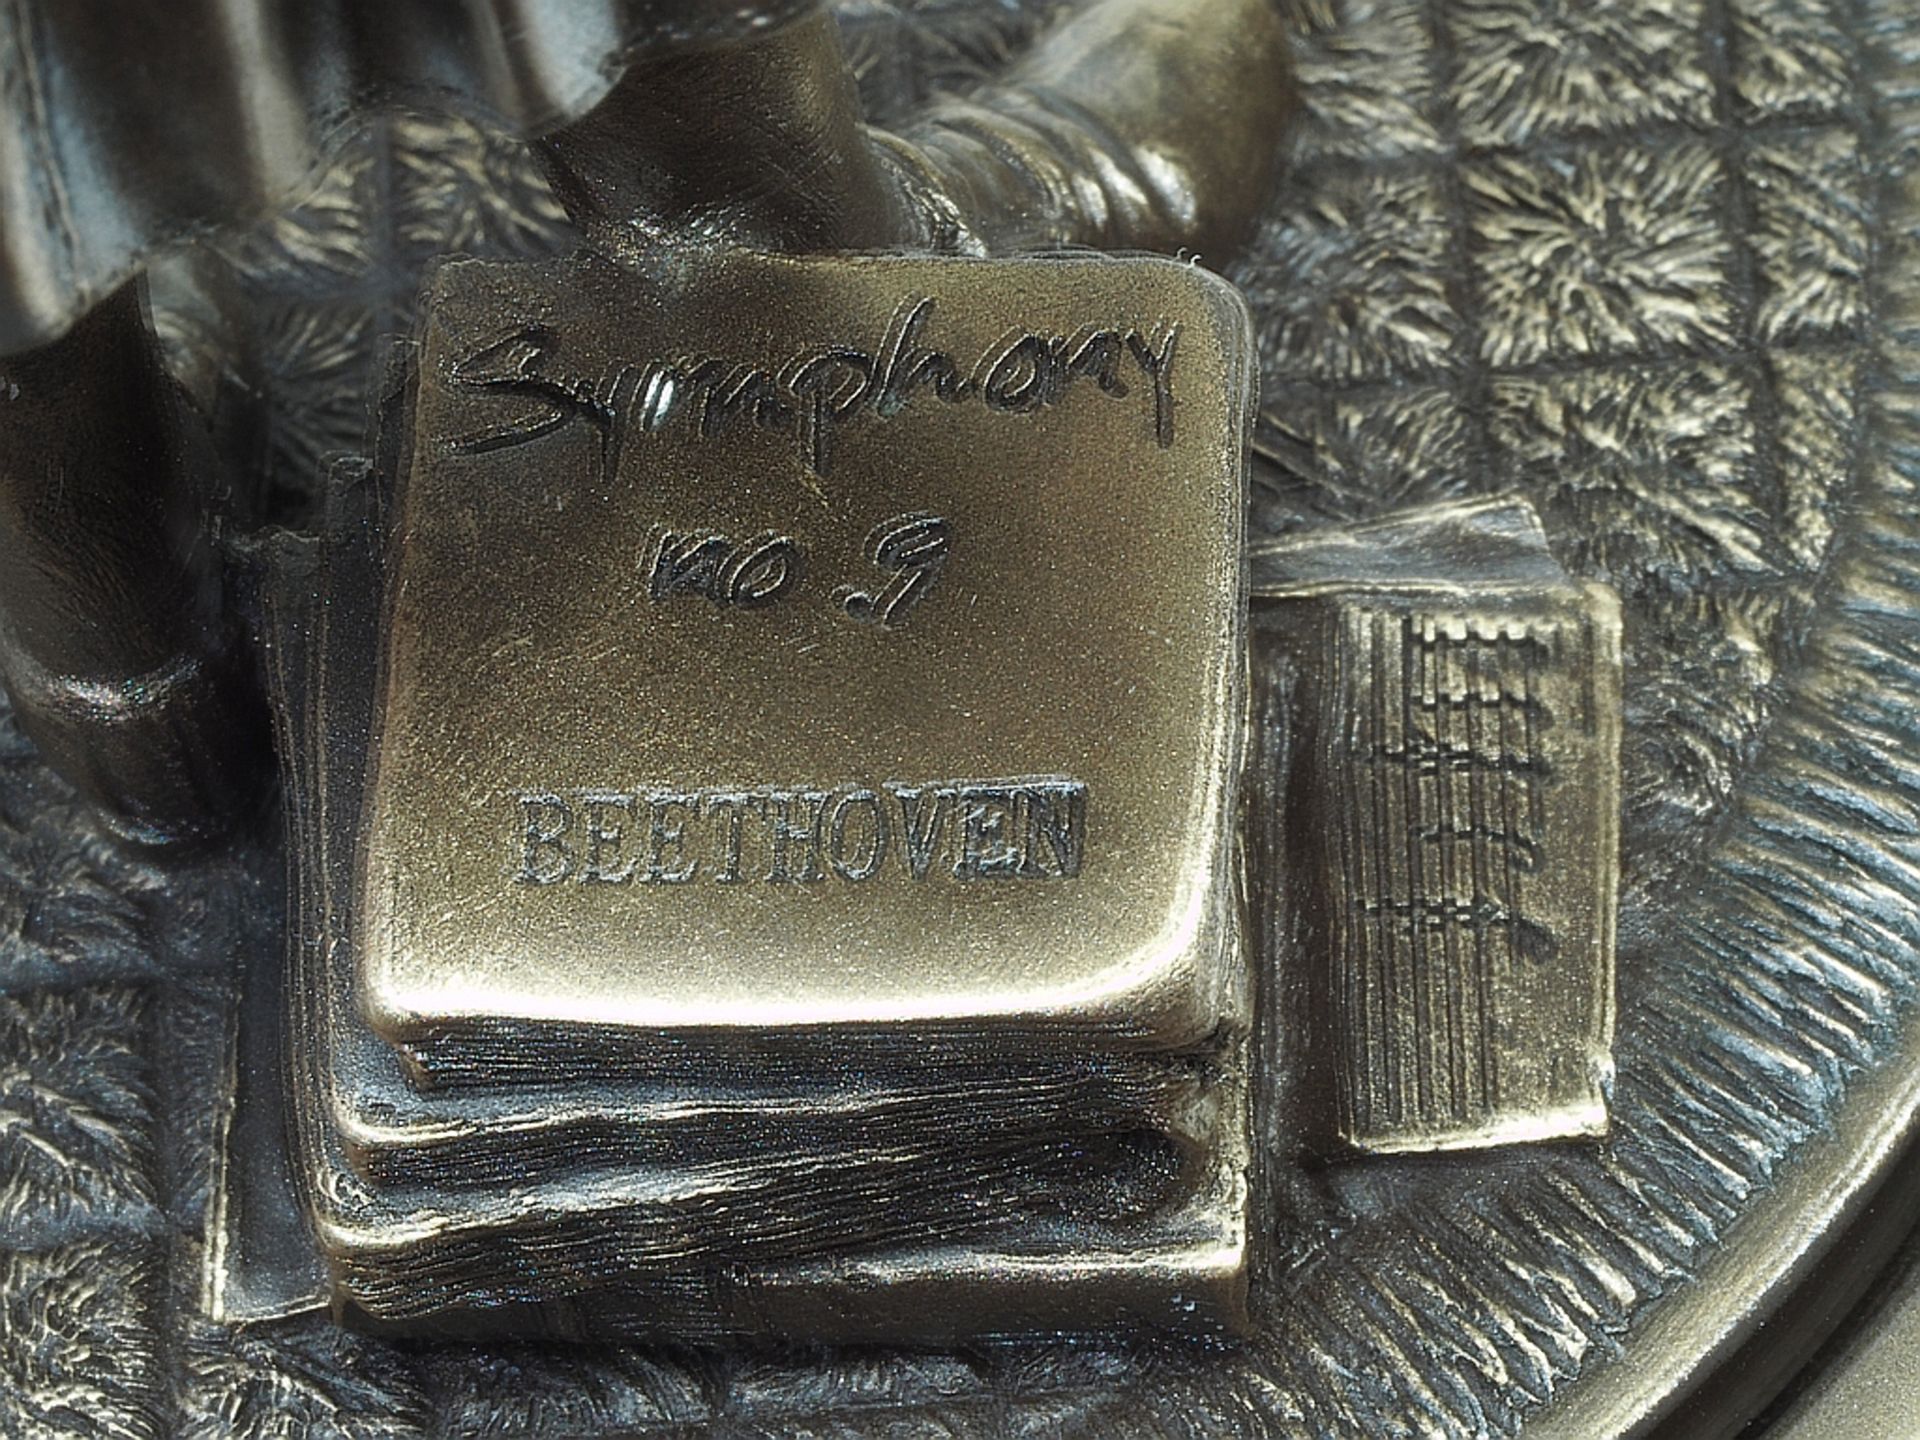 Figürliche Spieluhr "Ludwig van Beethoven", bezeichnet Symhony No. 9. - Bild 8 aus 8